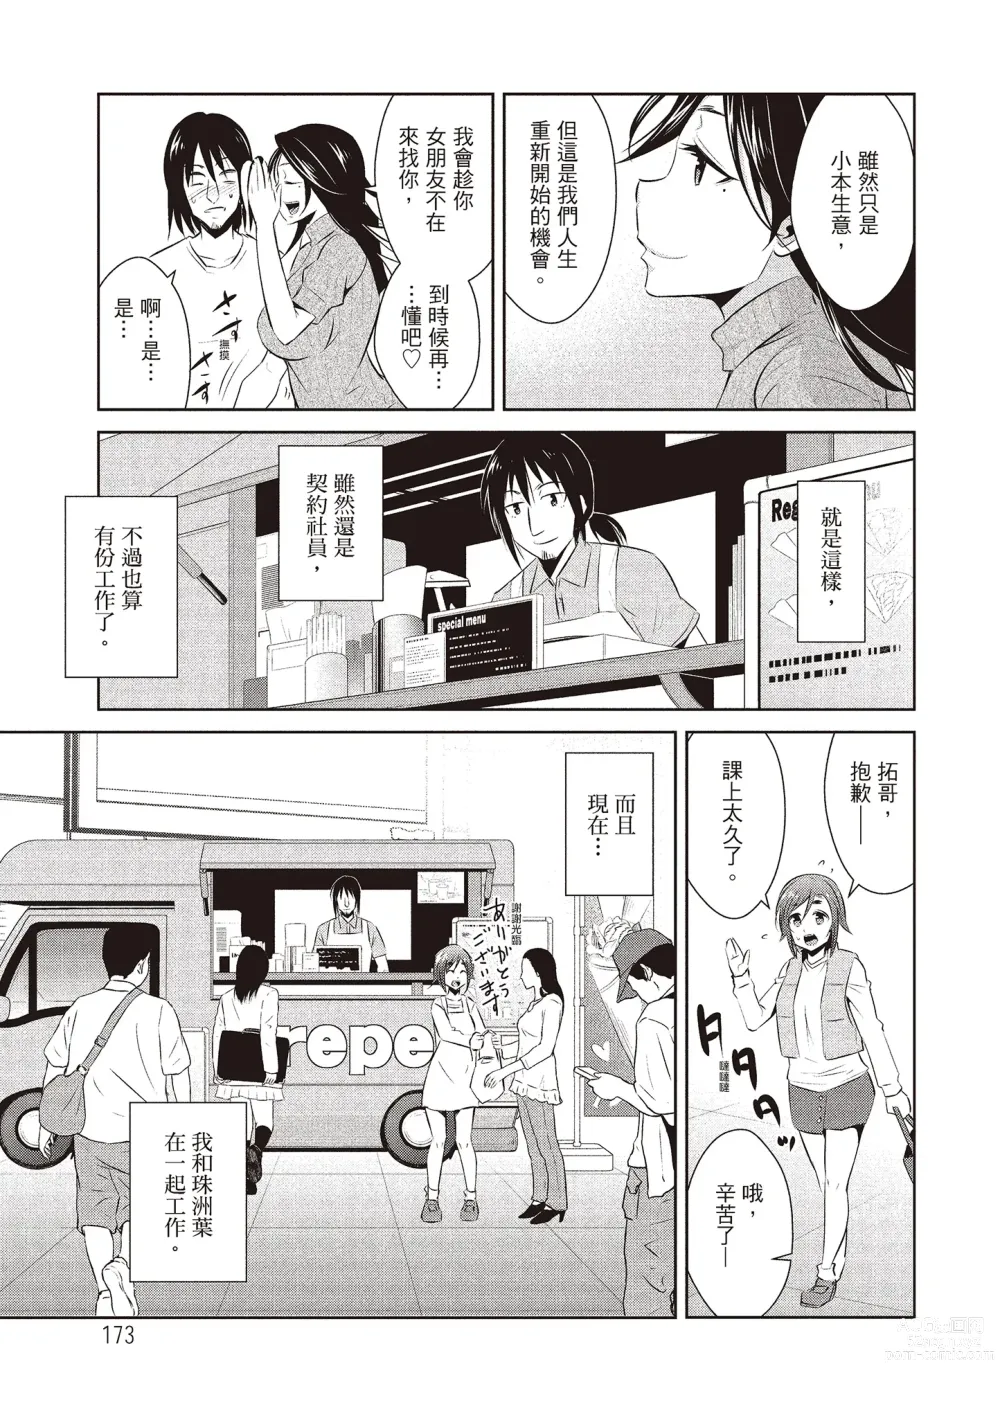 Page 175 of manga 朋友間的淫事